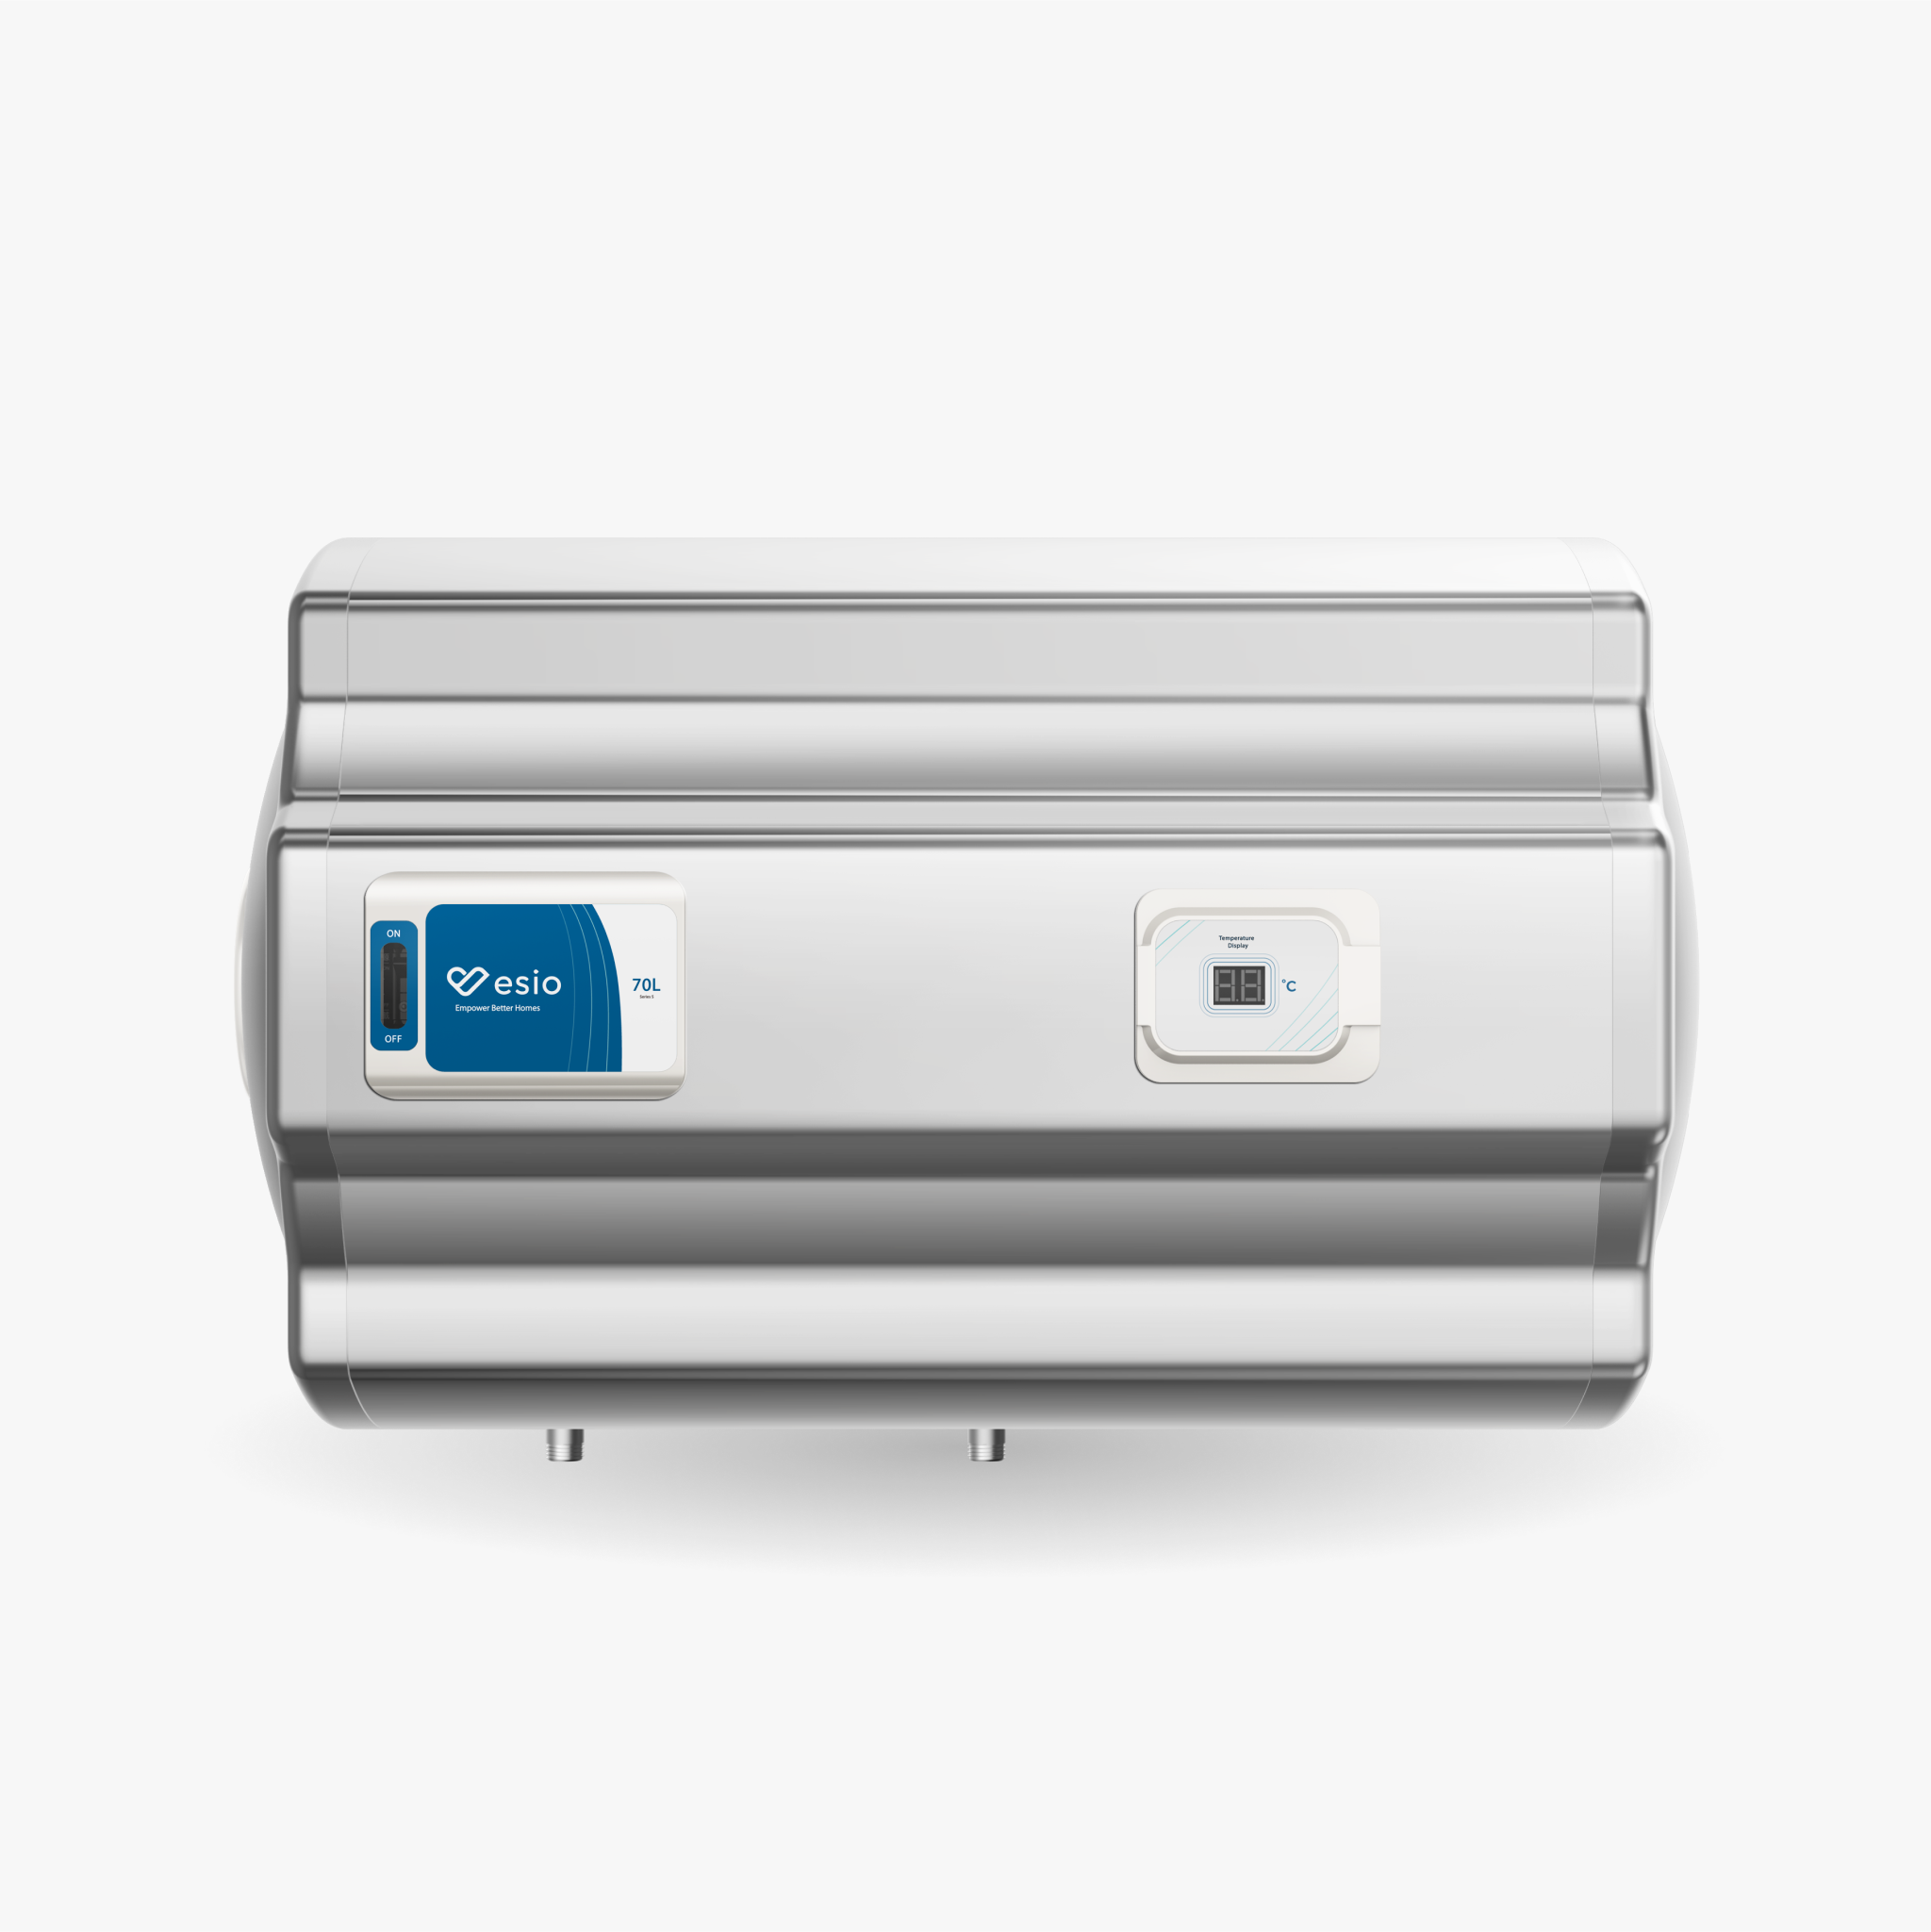 EM-7045H (Esio Storage Water Heater)